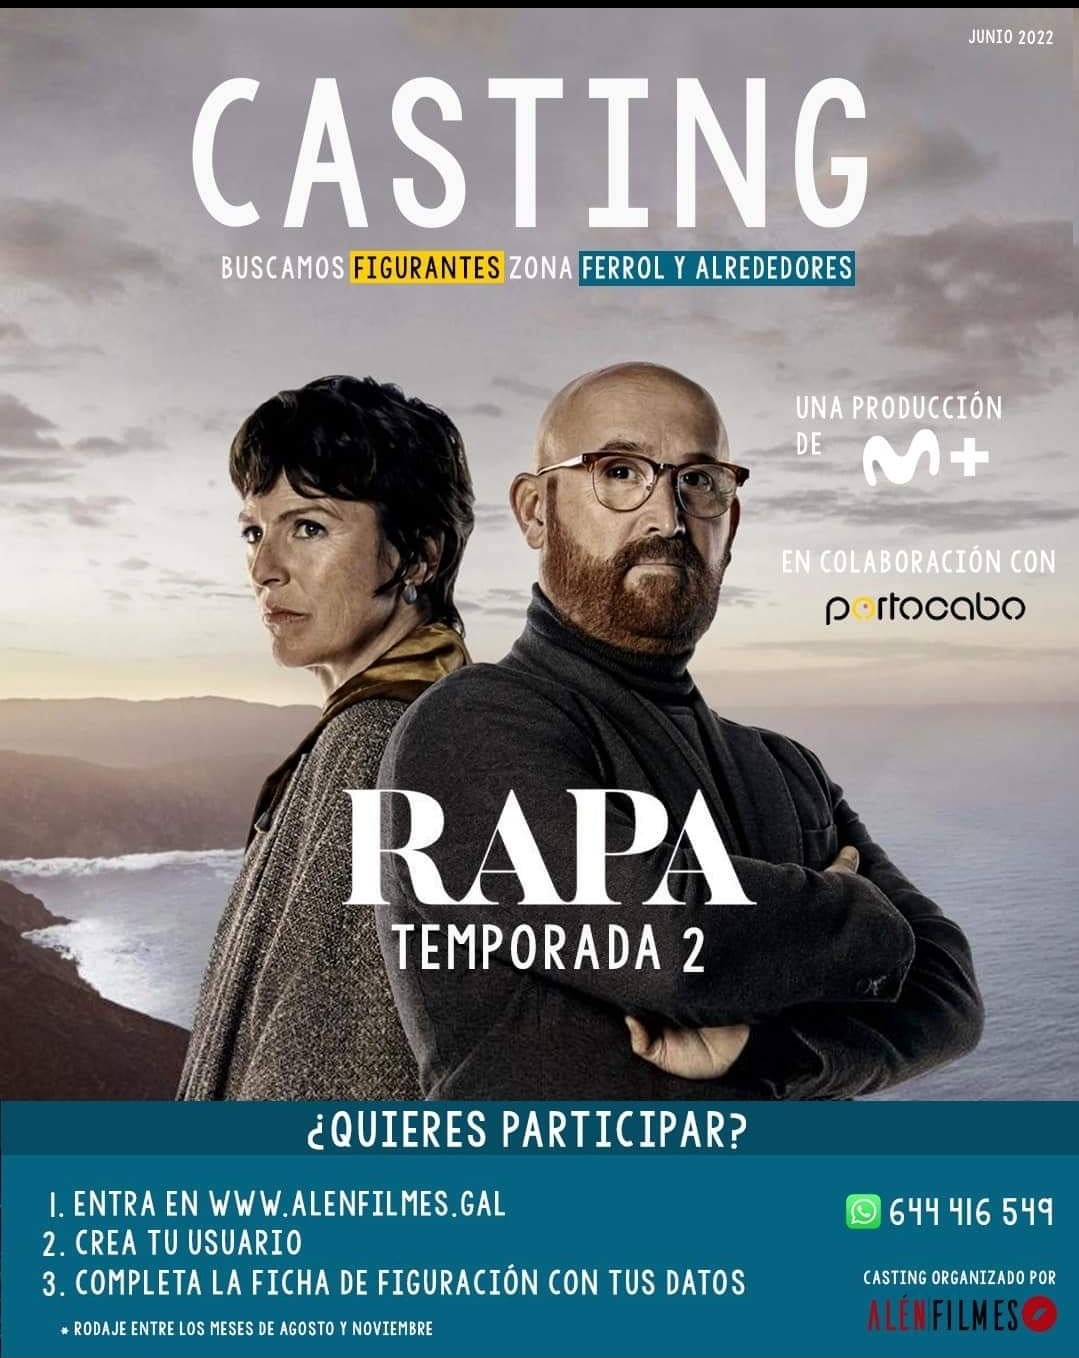 Buscan figurantes para la popular serie 'Rapa', rodada en Galicia